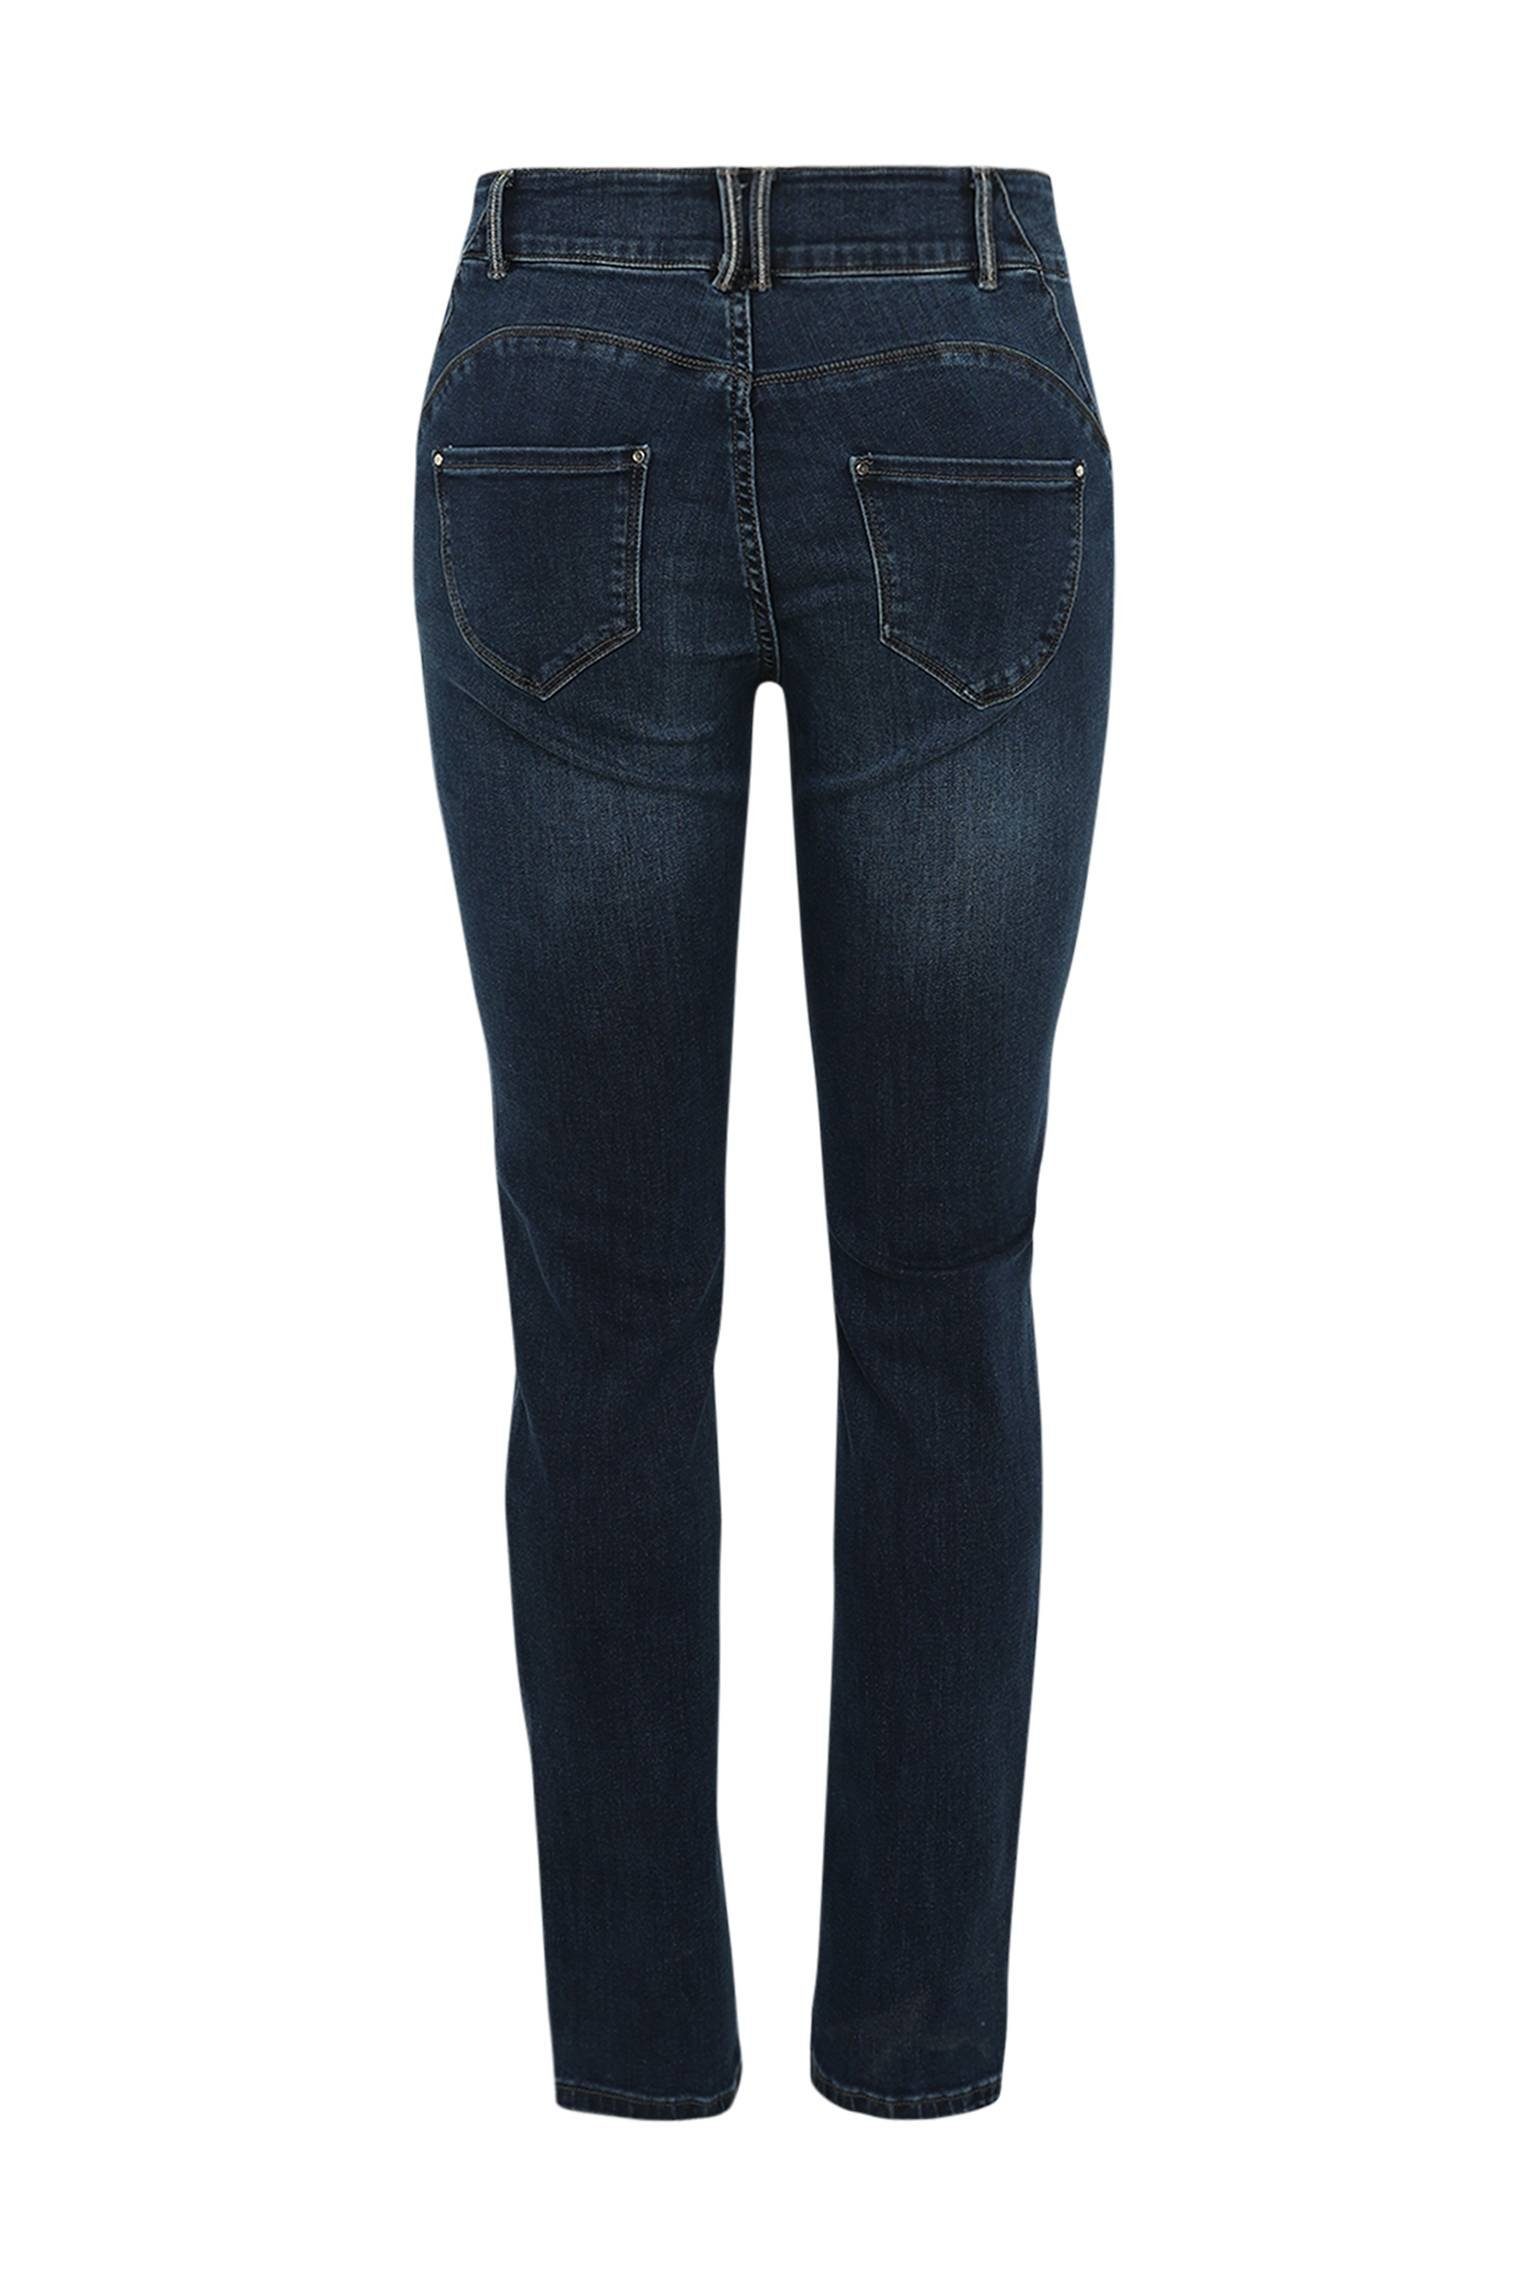 Paprika 5-Pocket-Jeans Slim-Fit-Jeans Push-Up L32 Mit Louise